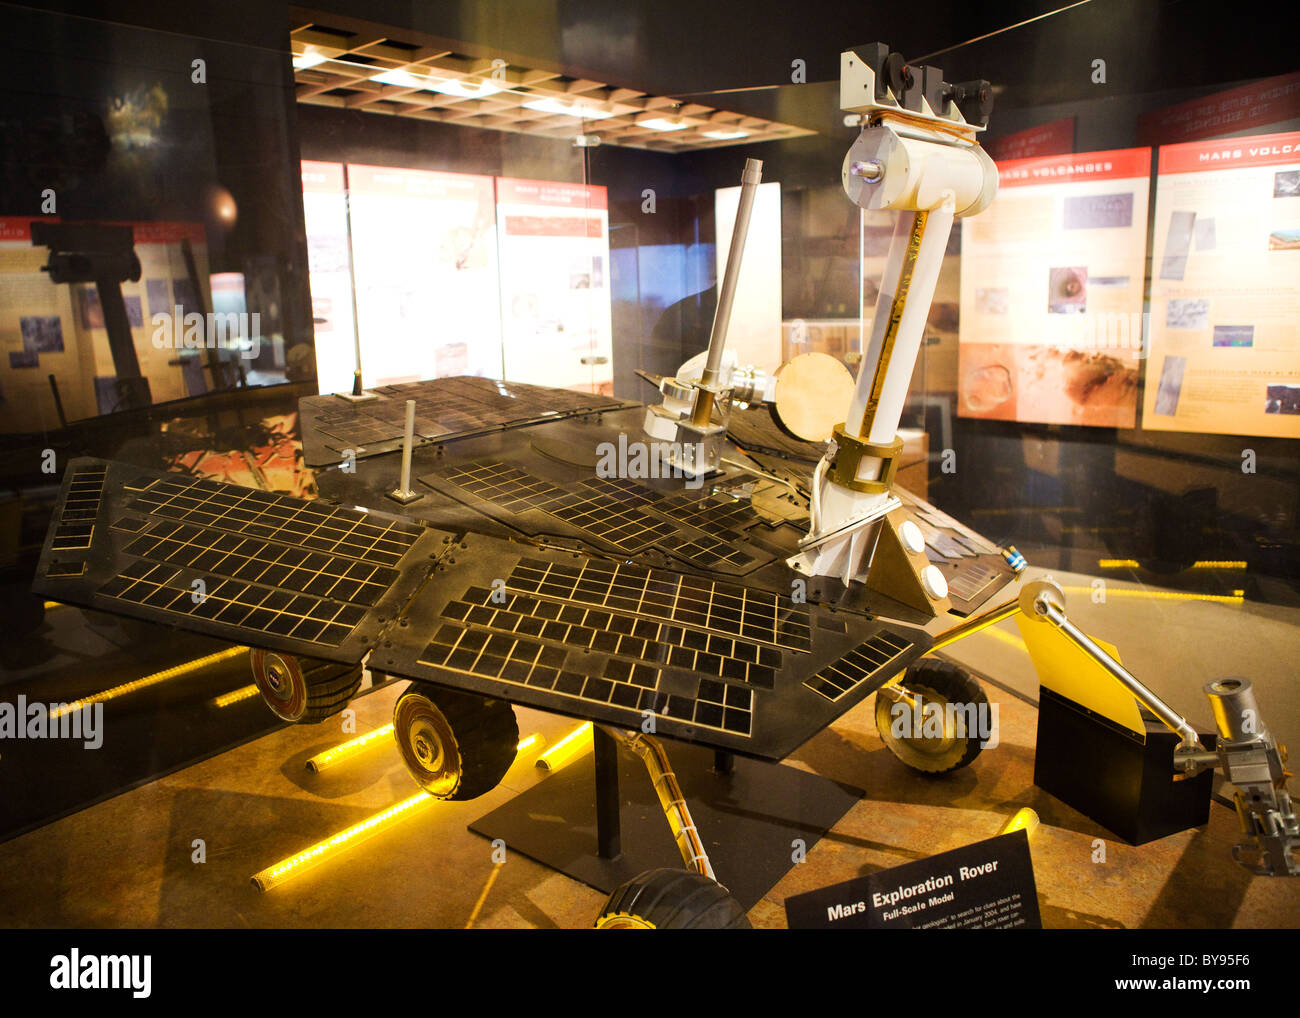 Modelo a escala completa de Mars Exploration Rover muestra en el Smithsonian. Foto de stock